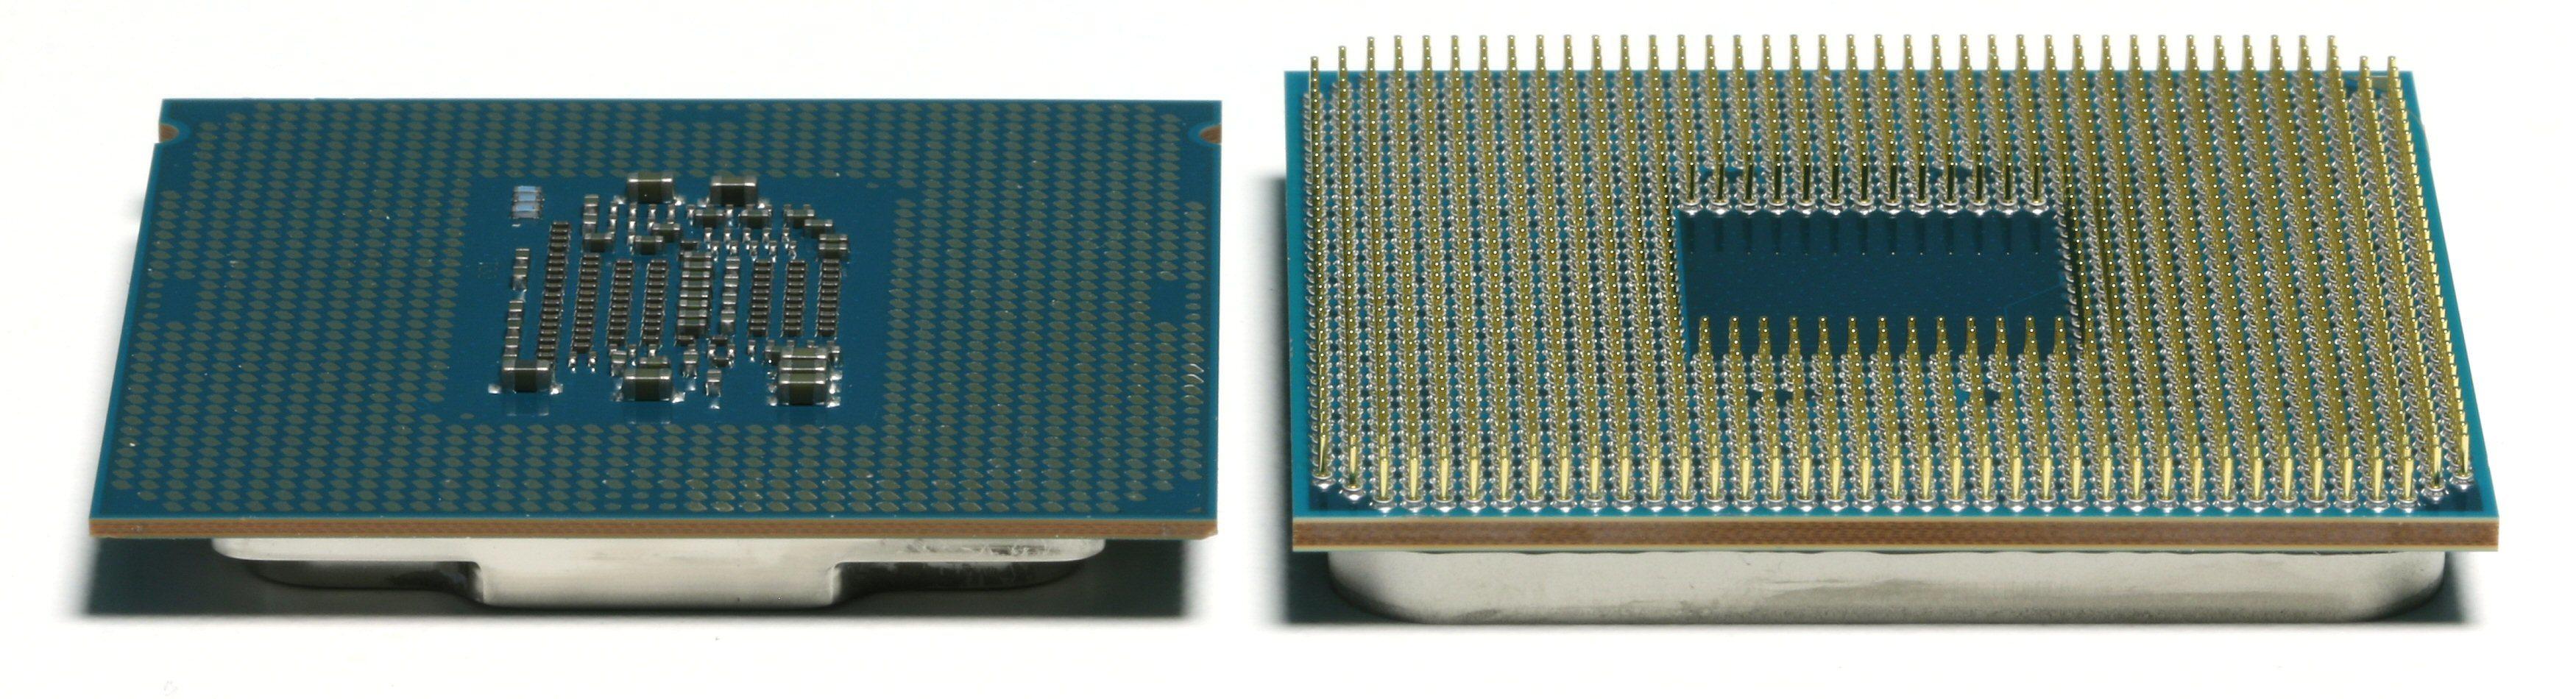 LGA og PGA: En Intel Kaby Lake-prosessor til venstre, en AMD Ryzen-prosessor til høyre.